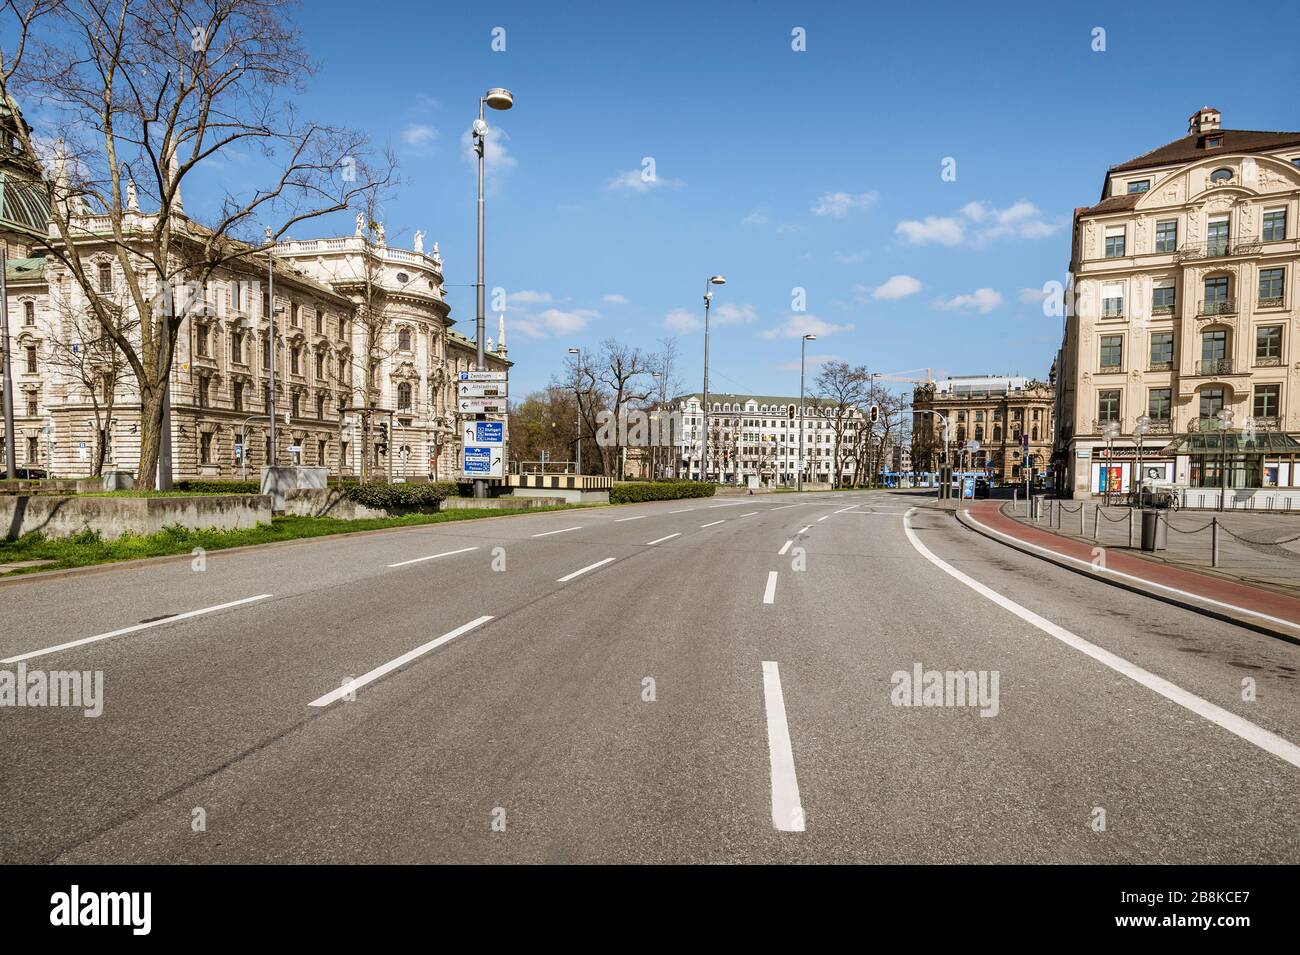 Baviera-Monaco-Germania, 22. März 2020: Strade vuote al Karlsplatz Stachus di Monaco a causa della chiusura a causa del virus corona Foto Stock